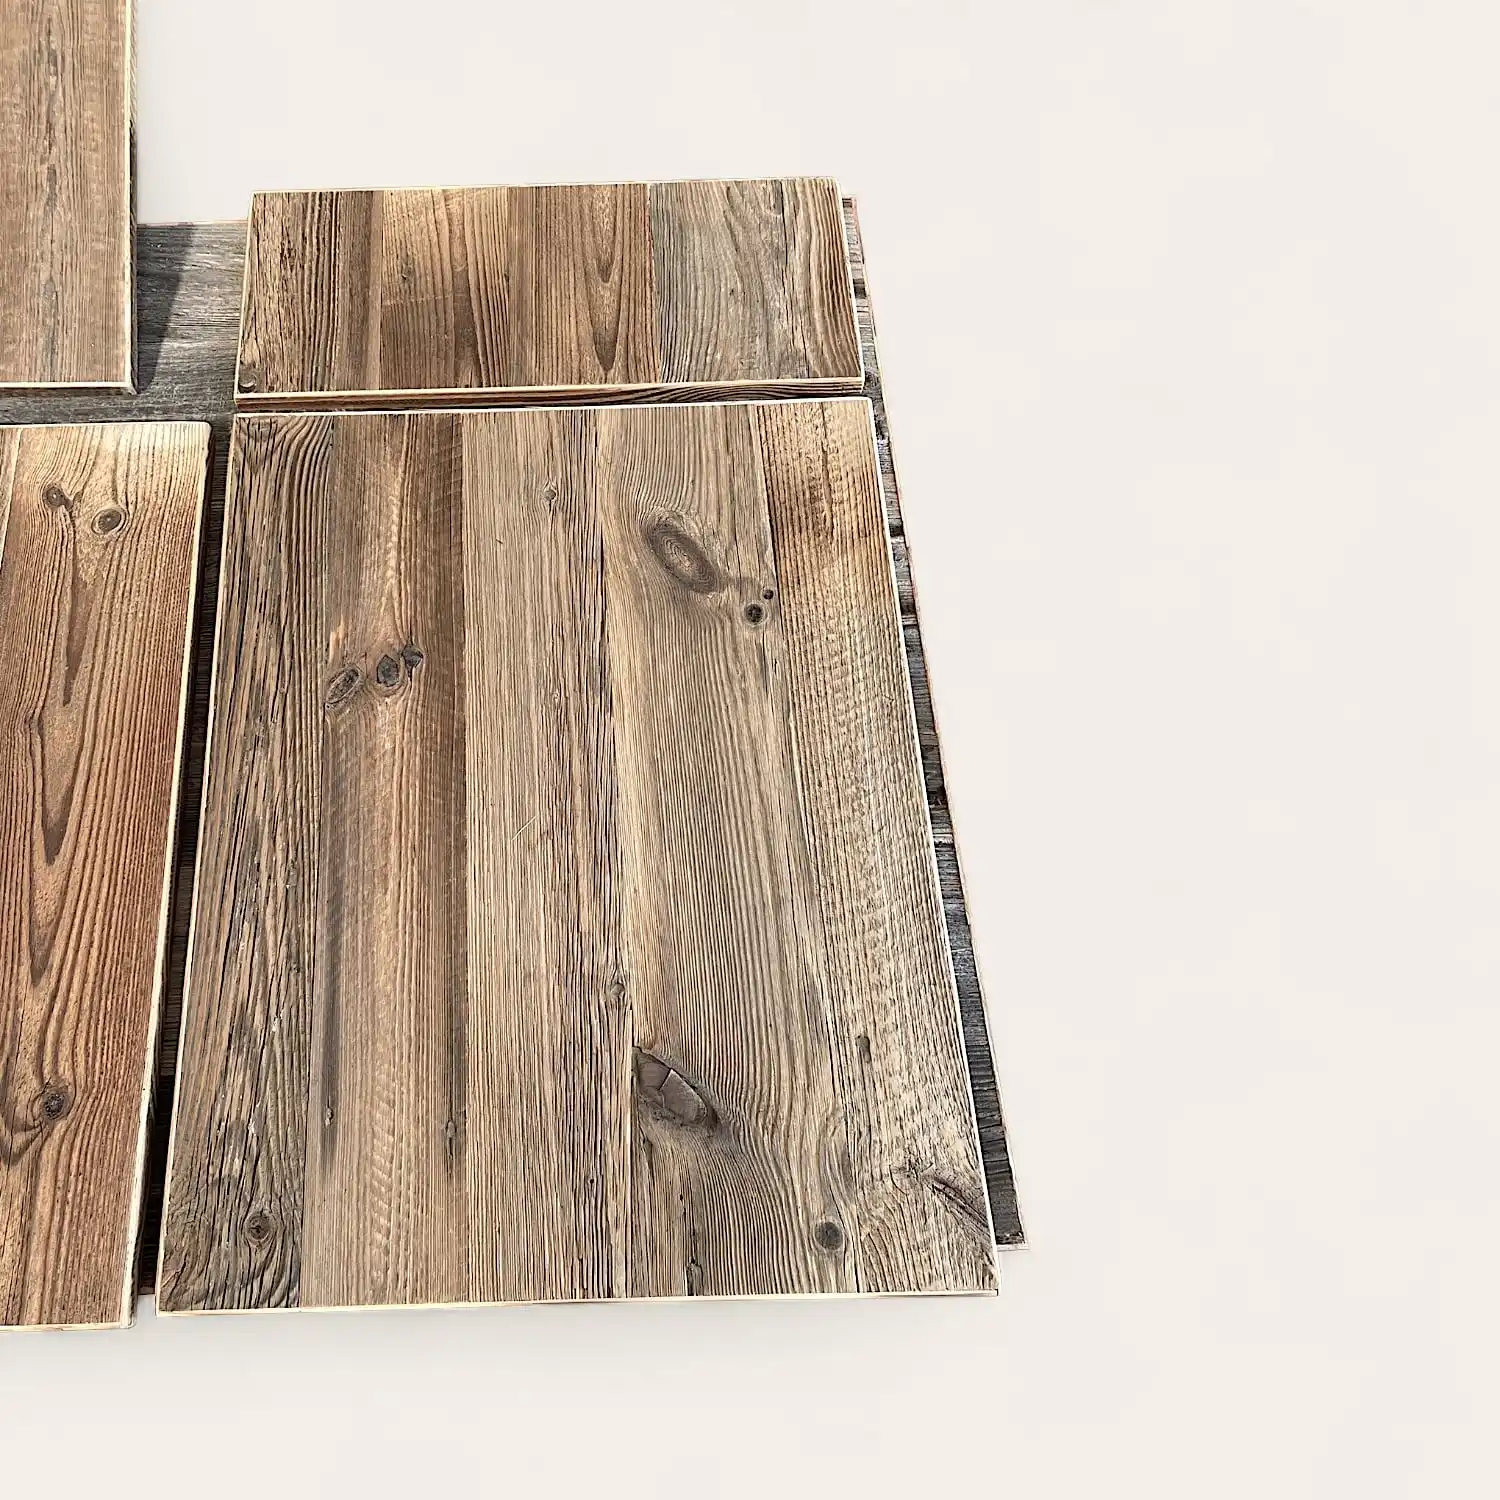  Des planches de bois au grain riche et sombre sont disposées pour montrer diverses orientations, sur un fond clair, créant une esthétique similaire à 3 plis vieux bois. 